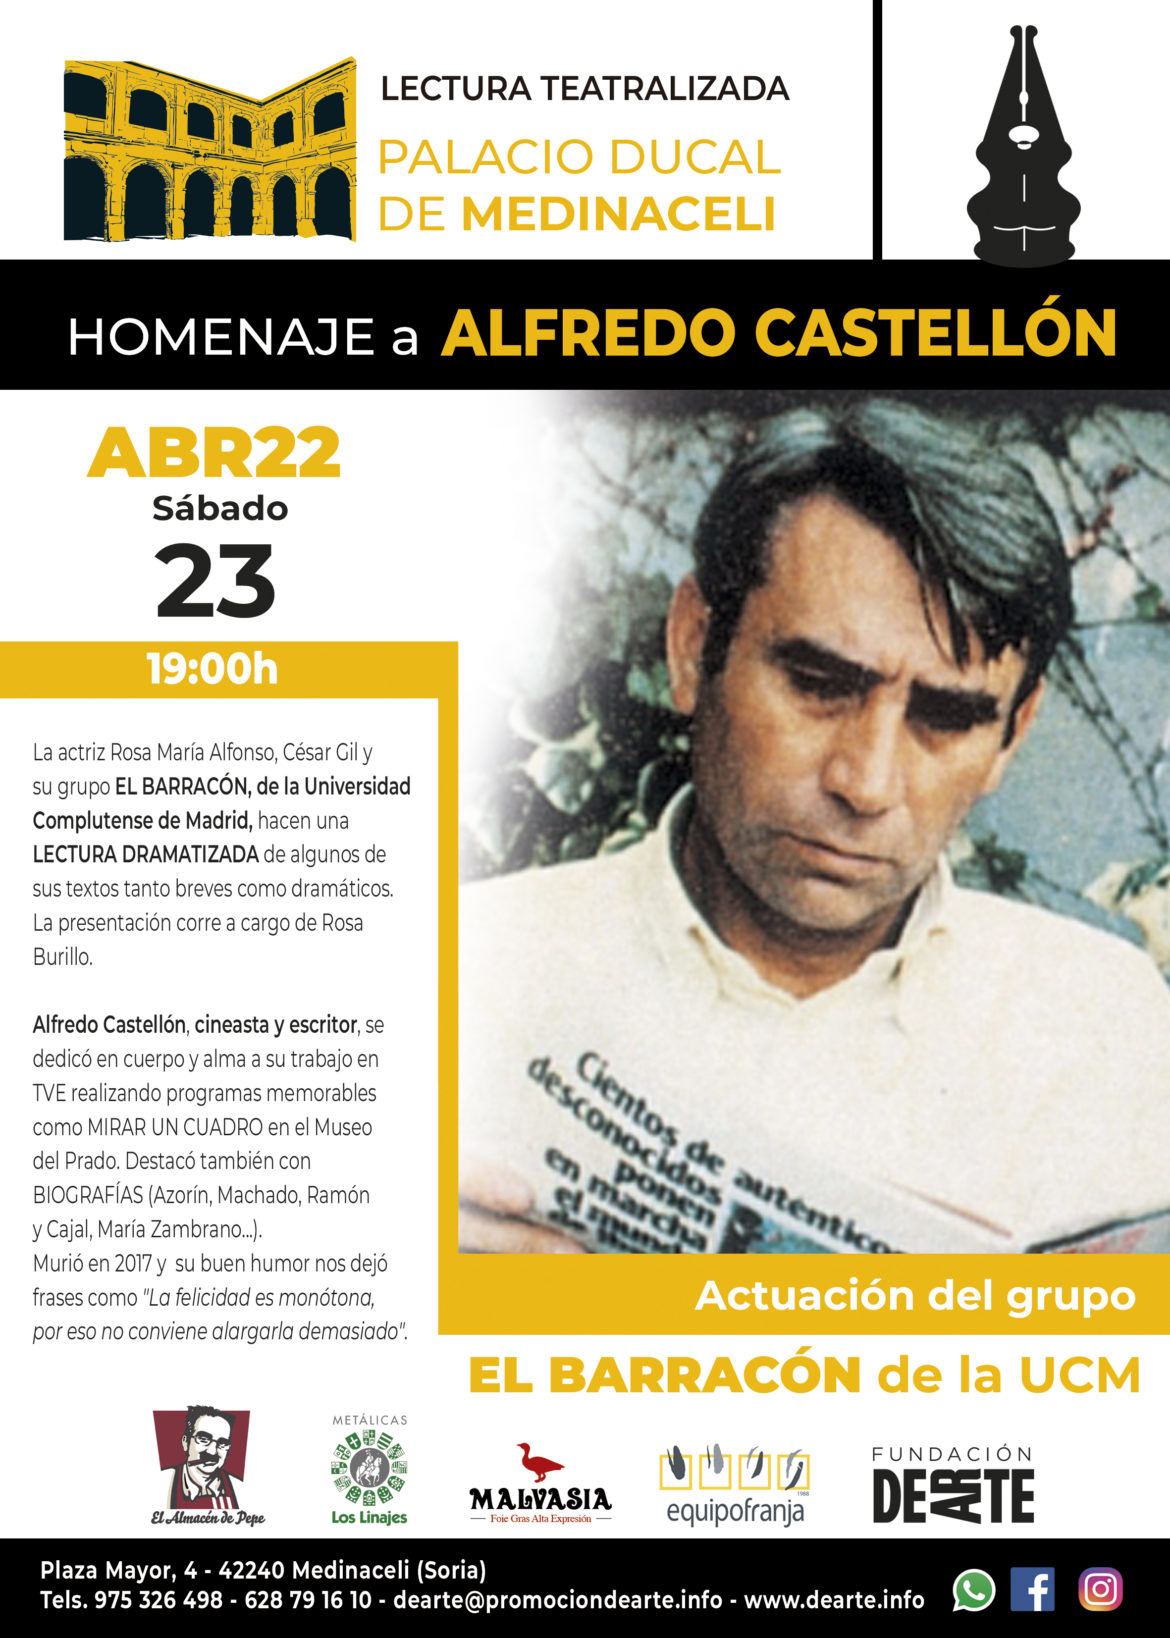 Homenaje a Alfredo Castellón, cineasta y escritor